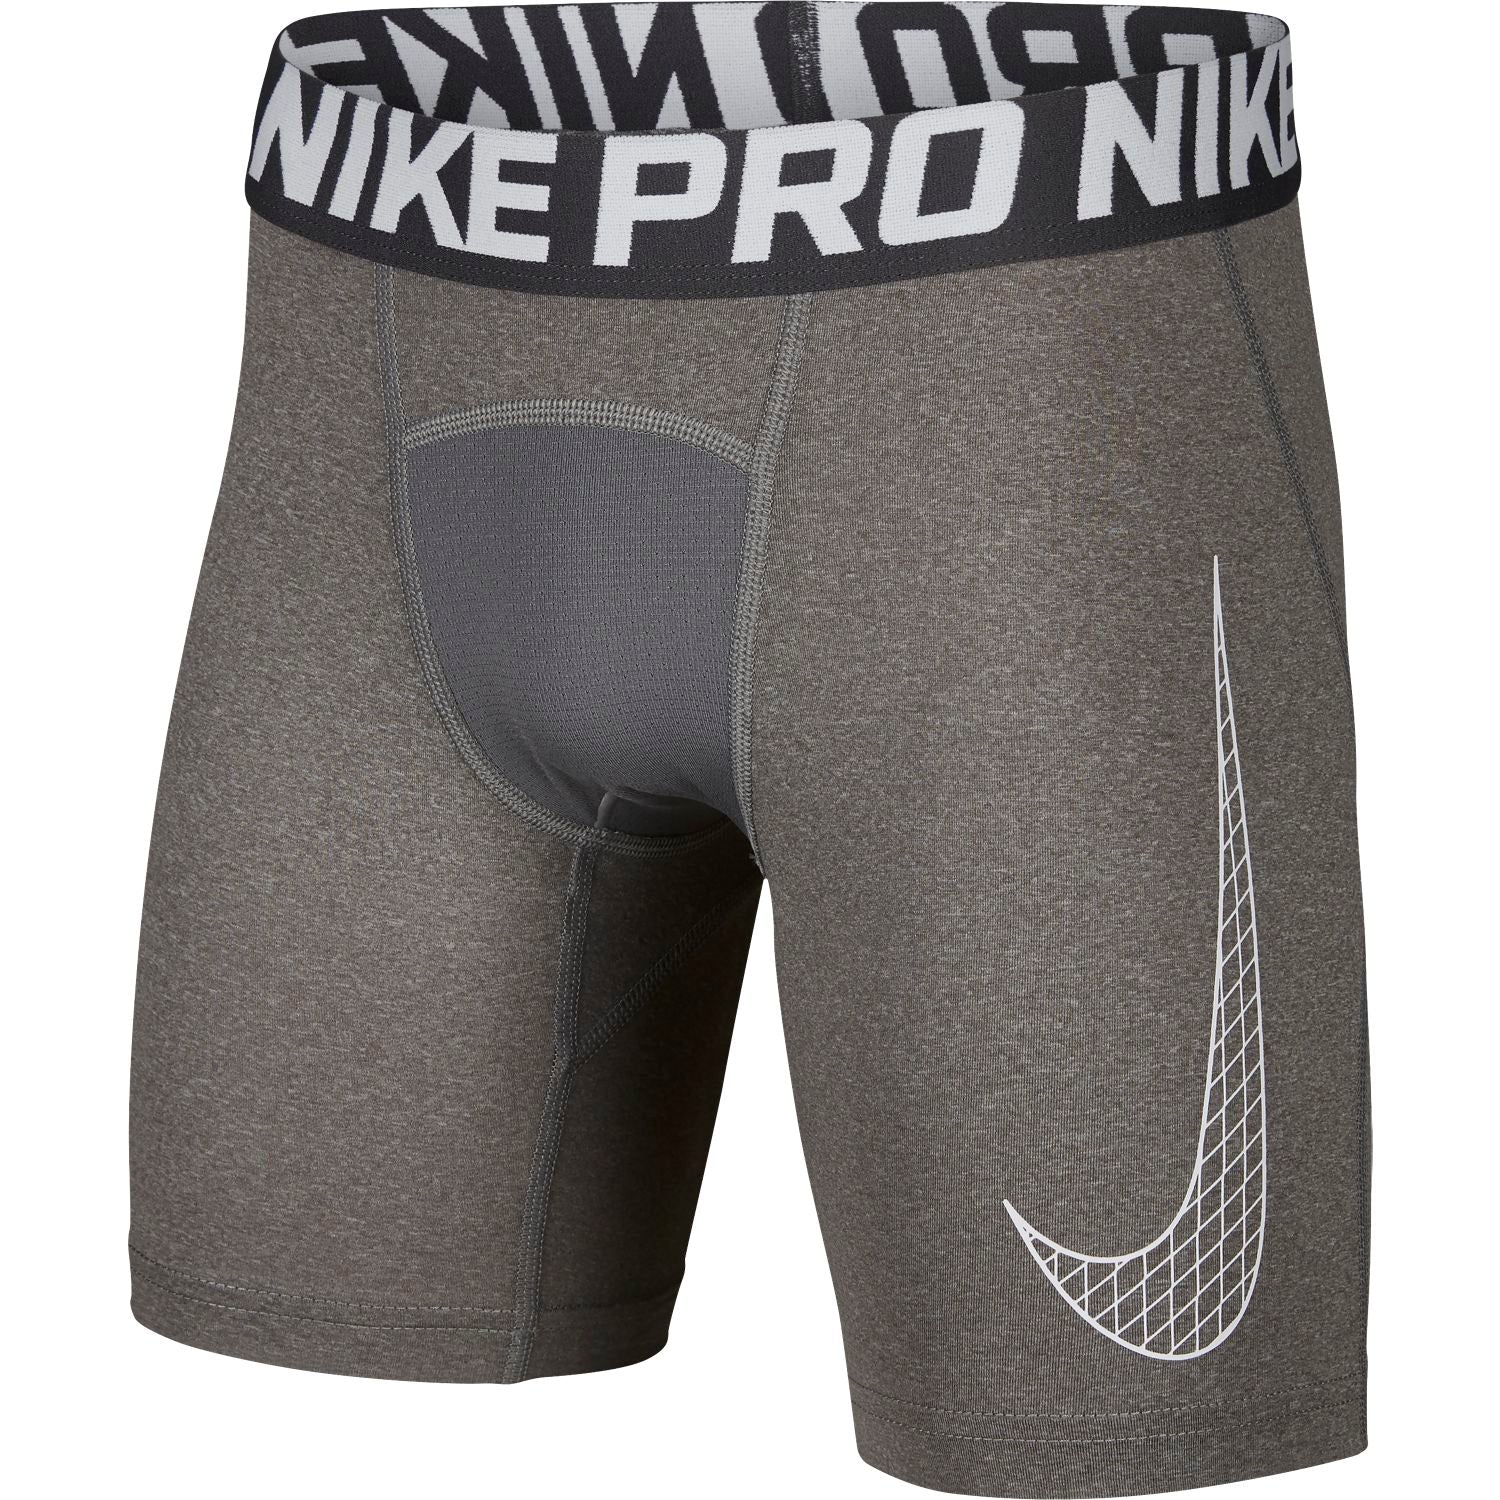 grey nike pro shorts